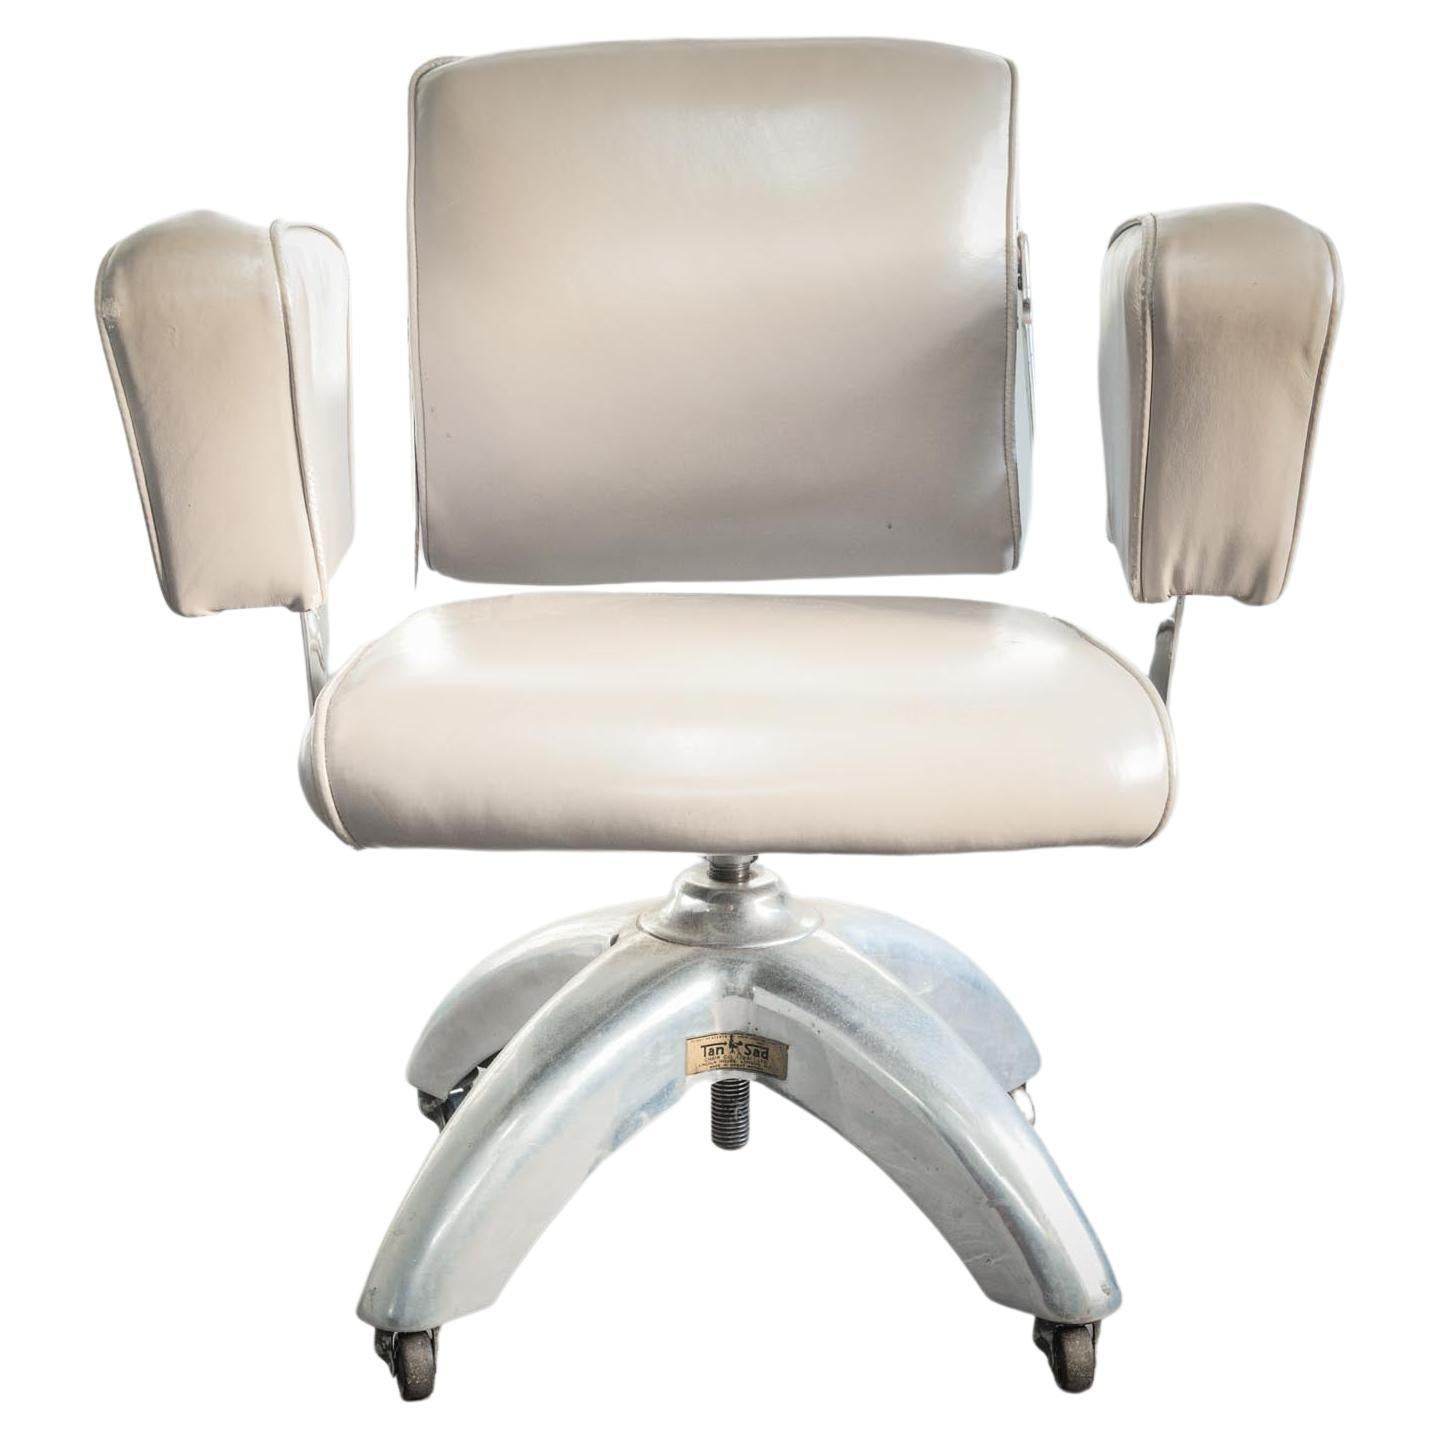 Une belle chaise de bureau par Tansad. Ce modèle du milieu du siècle, vers 1950, est le siège de bureau pivotant De Luxe V.26 avec chrome et revêtement en cuir gris. Extrêmement confortable et élégant. Avec un cadre en aluminium poli et des bras